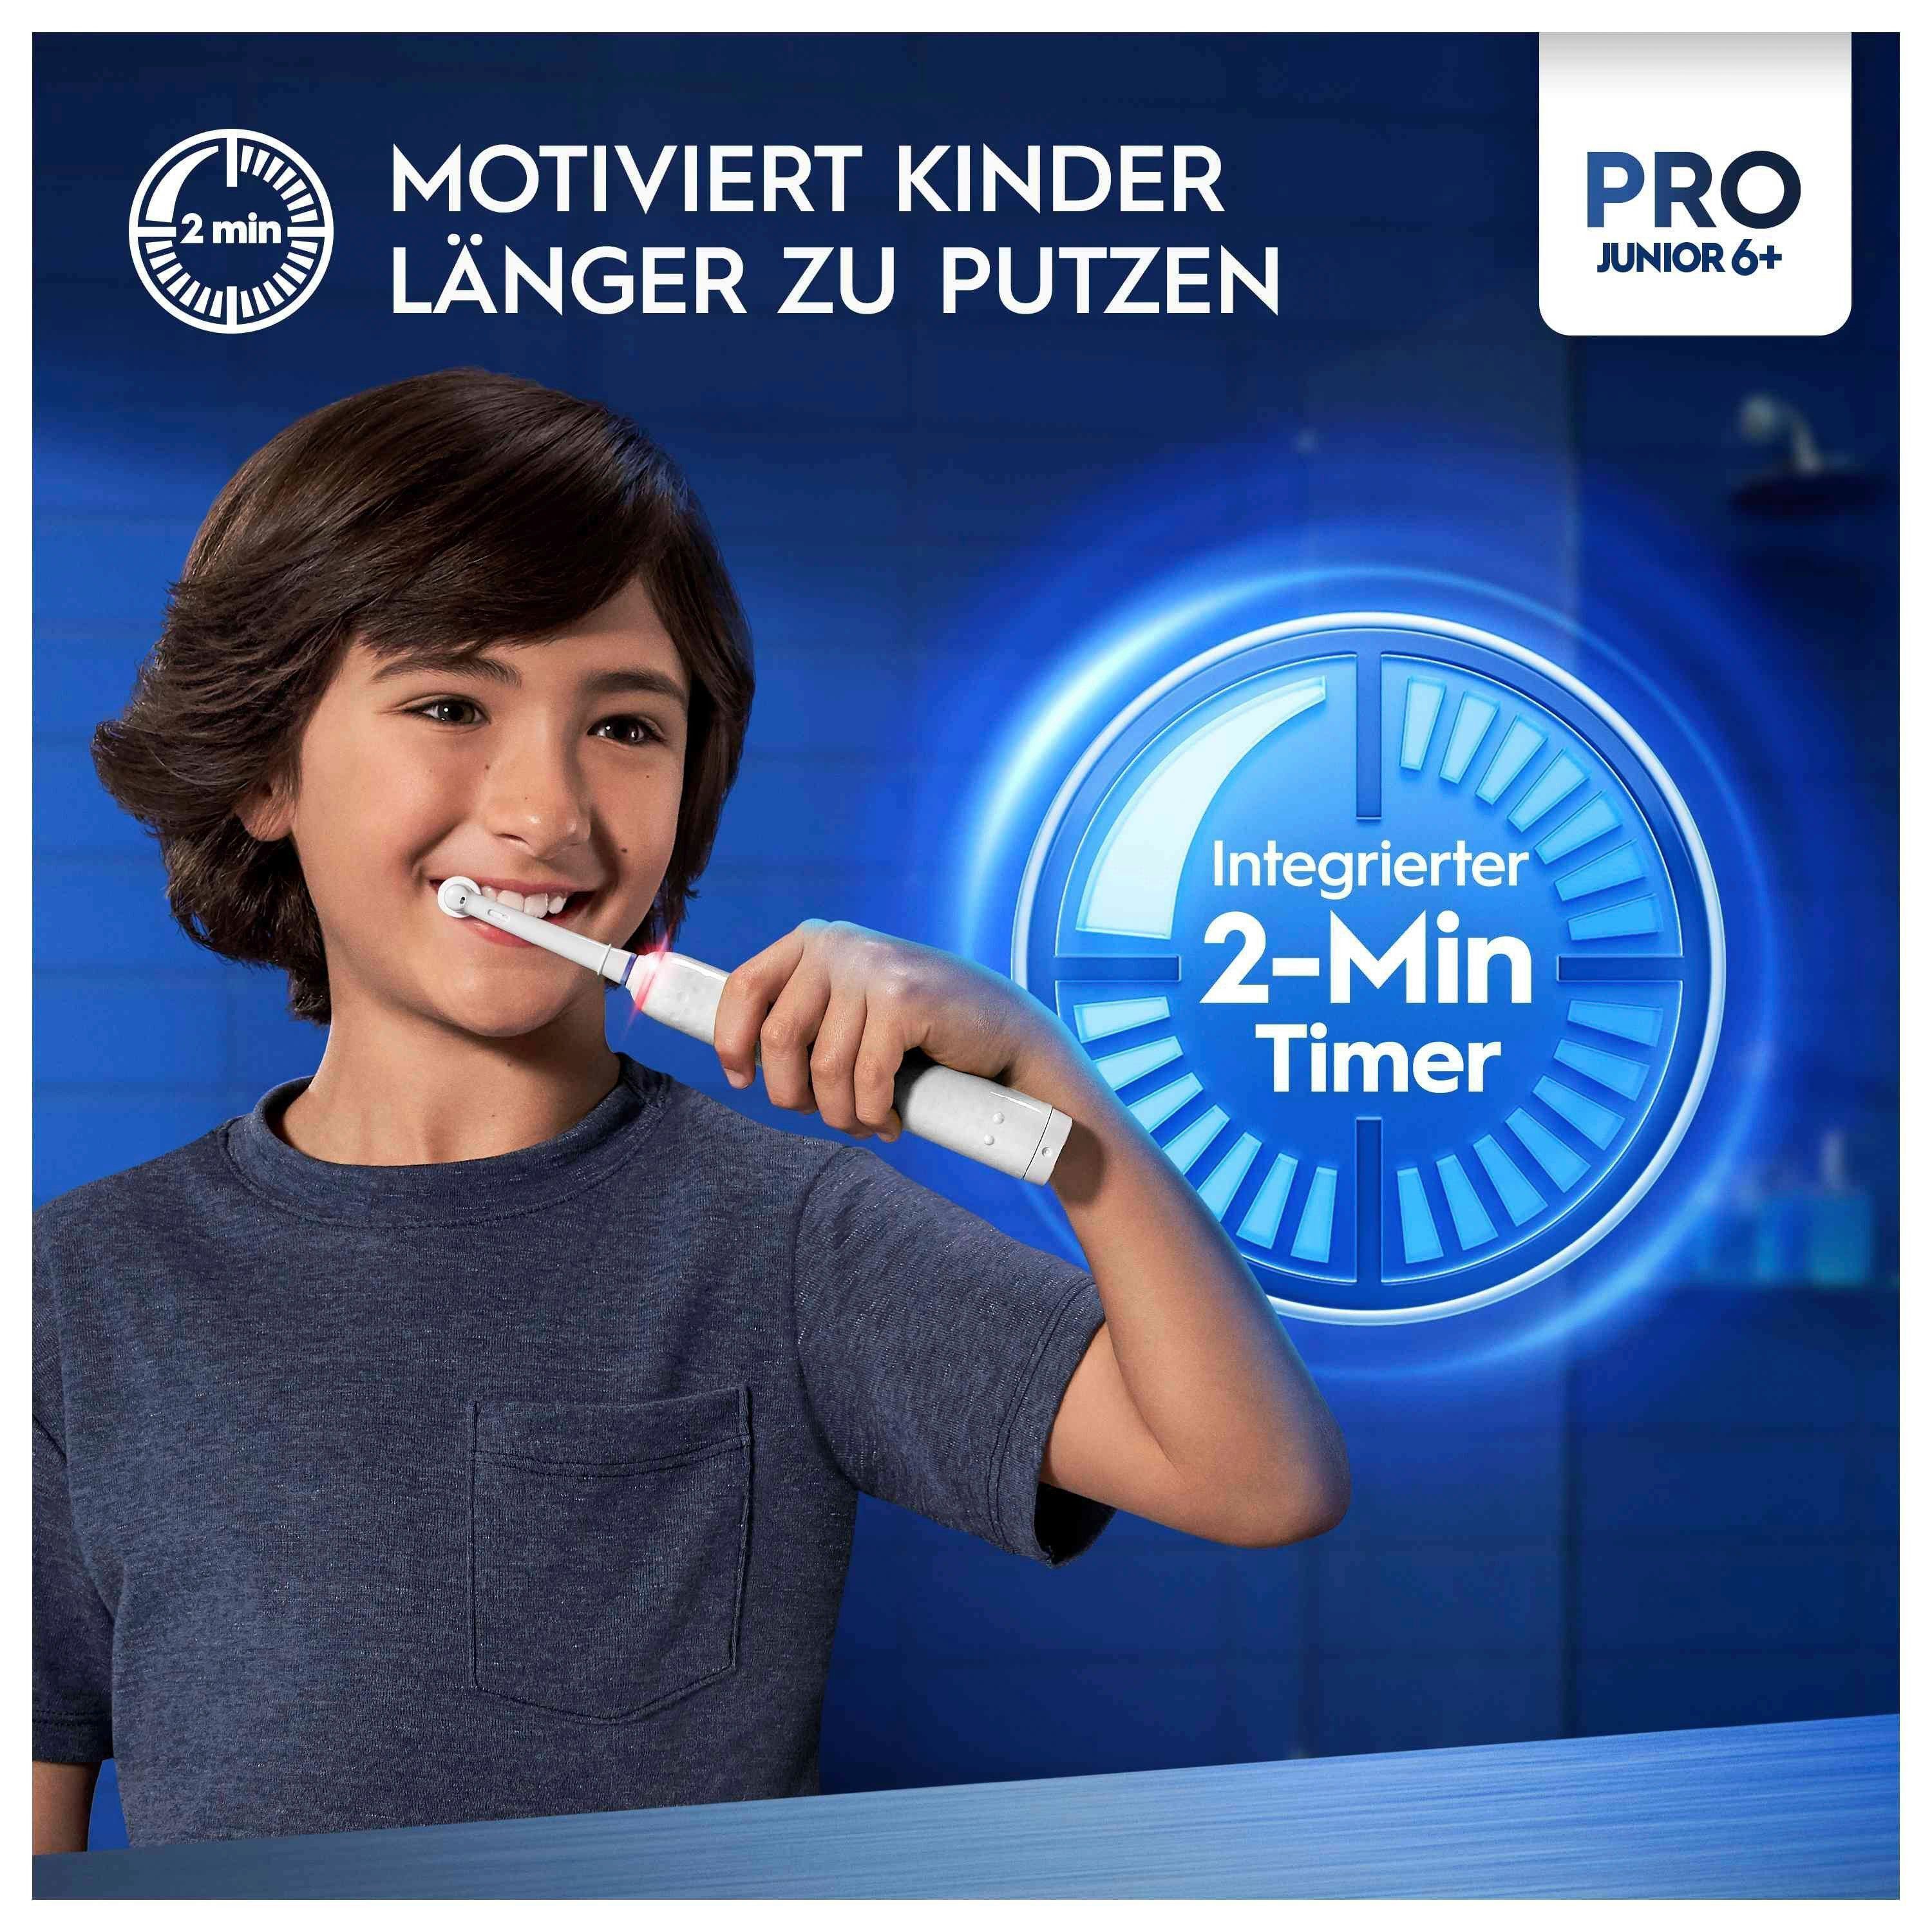 Oral-B Elektrische Zahnbürste Pro Junior, Aufsteckbürsten: 2 St.,  Drucksensor, Der integrierte 2-Minuten Timer motiviert Kinder länger zu  putzen